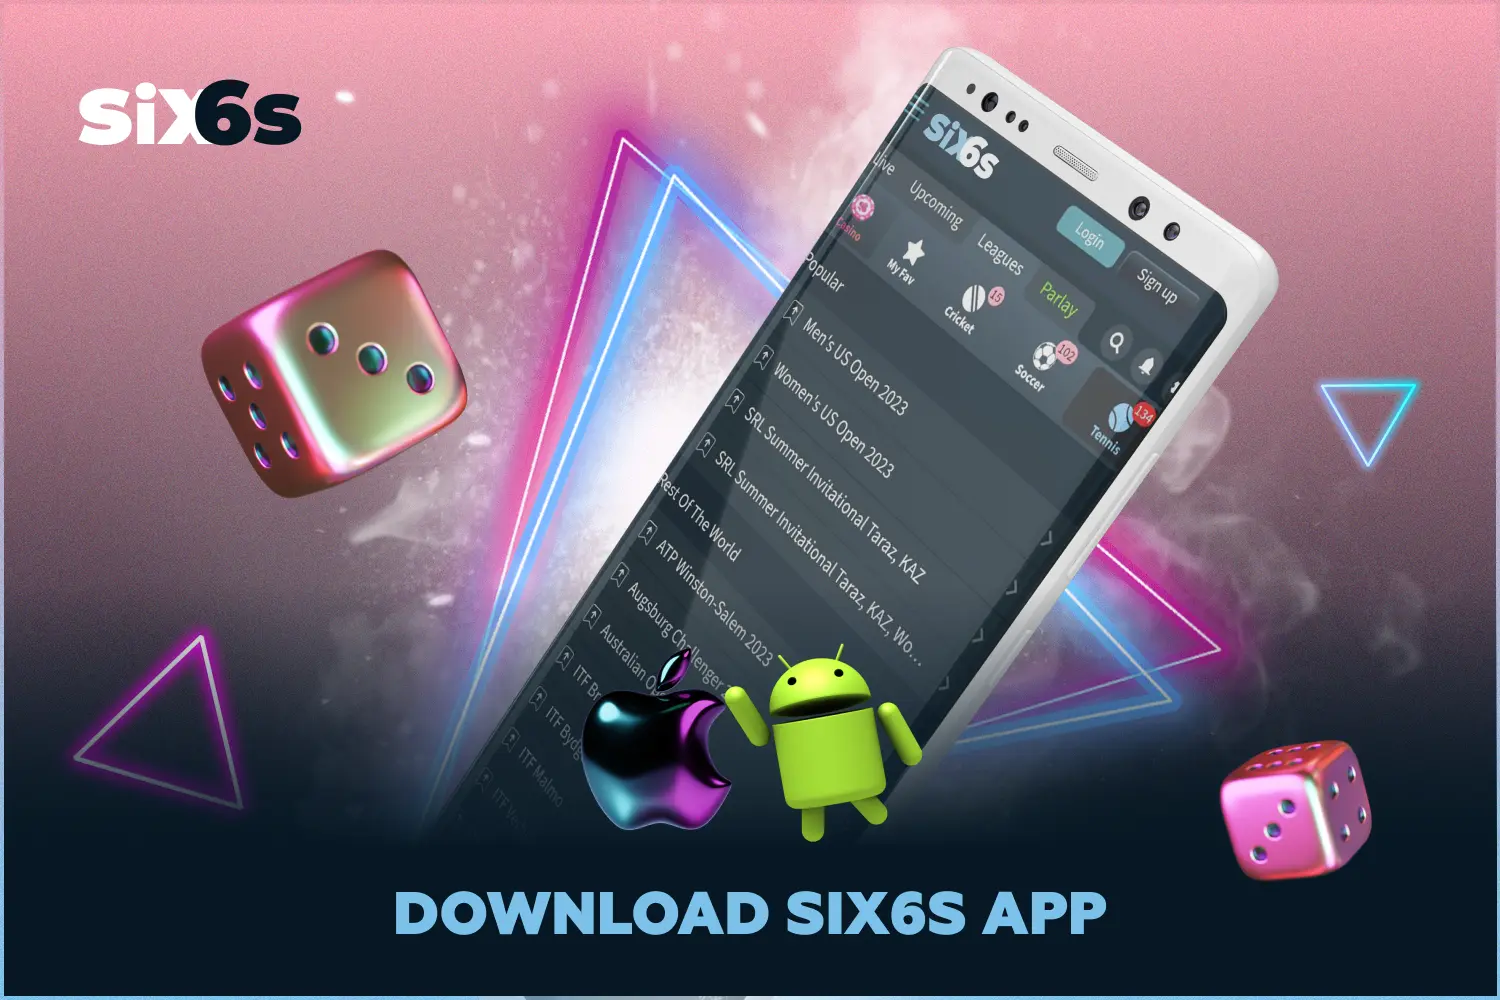 दुनिया भर के उपयोगकर्ता Six6s ऐप का नवीनतम संस्करण मुफ्त में डाउनलोड कर सकते हैं